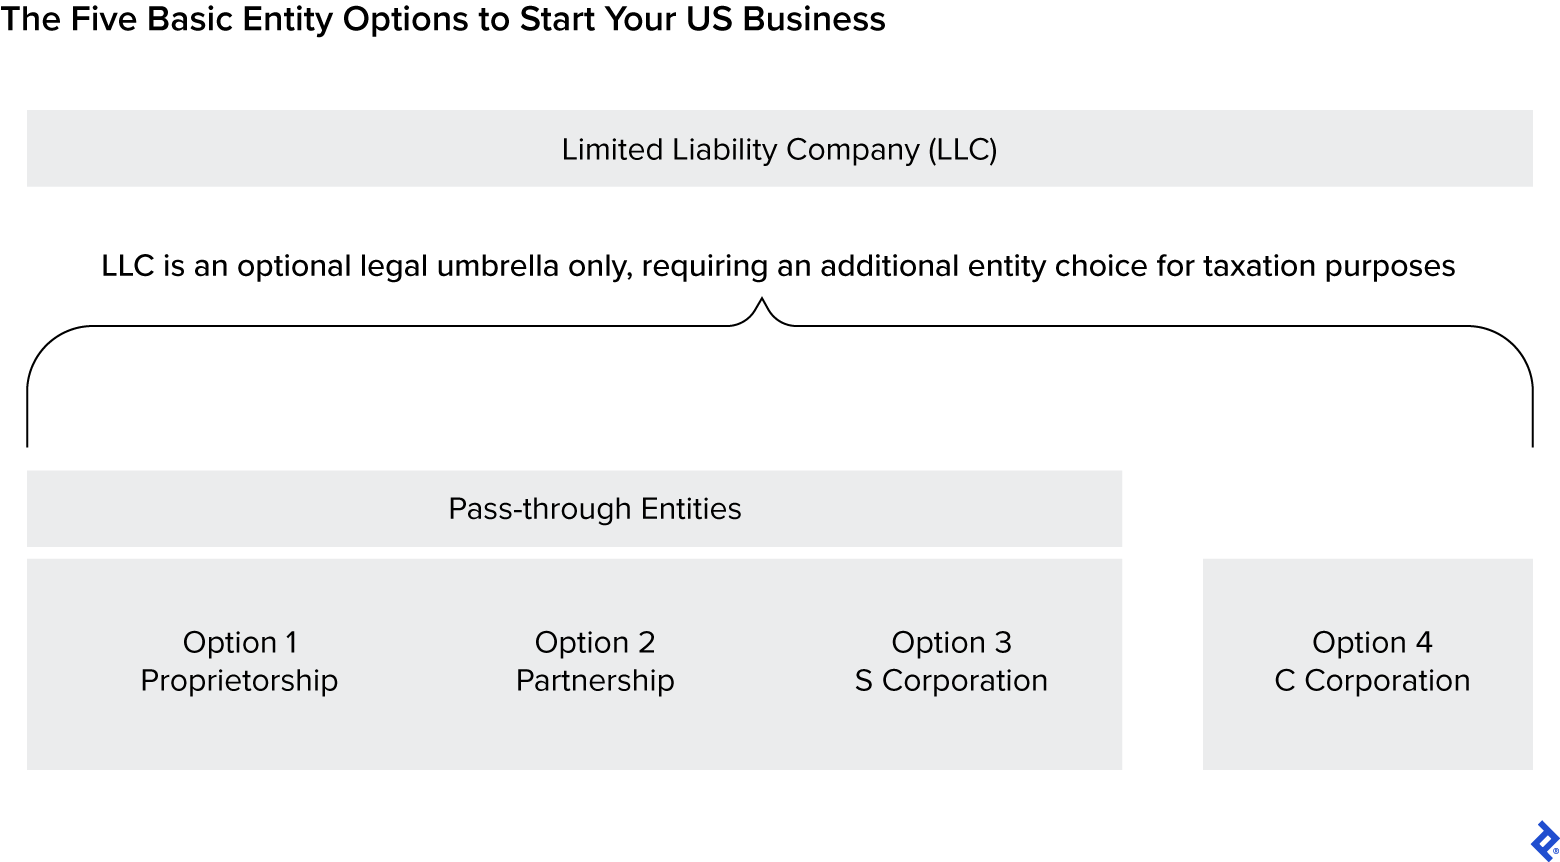 一张图显示了四种结构:C公司和独资、合伙和S公司这三种过渡实体。它还显示了可选有限责任公司作为这四种实体的总括法律结构。